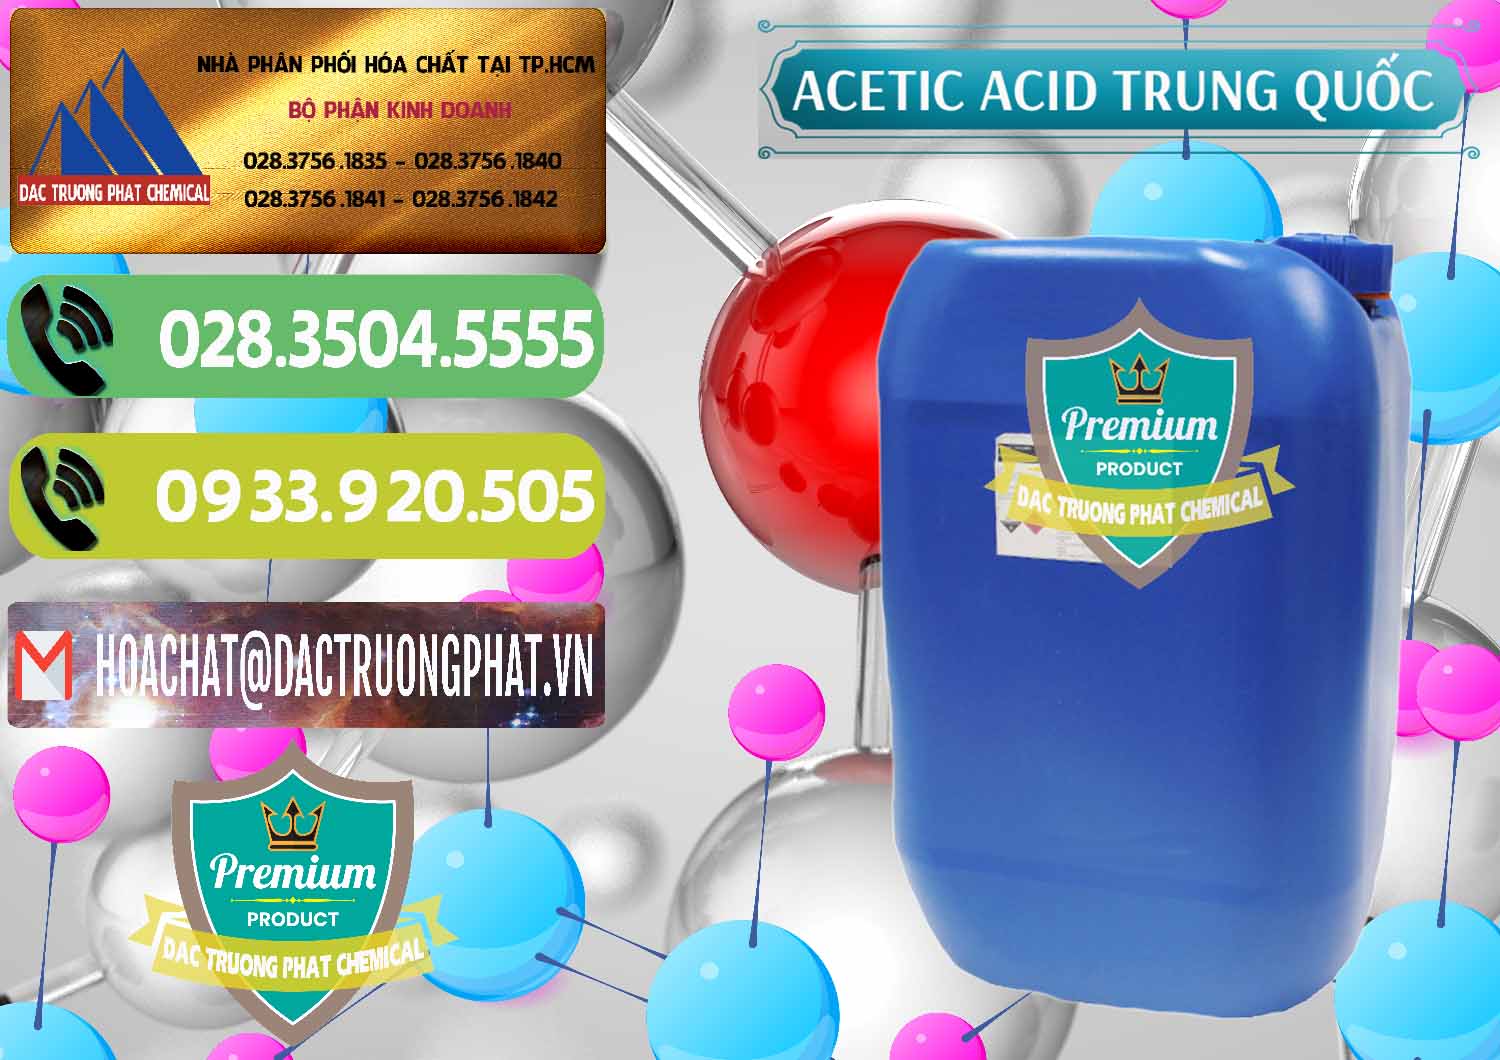 Cty chuyên nhập khẩu và bán Acetic Acid – Axit Acetic Trung Quốc China - 0358 - Nơi chuyên cung cấp _ bán hóa chất tại TP.HCM - hoachatmientay.vn